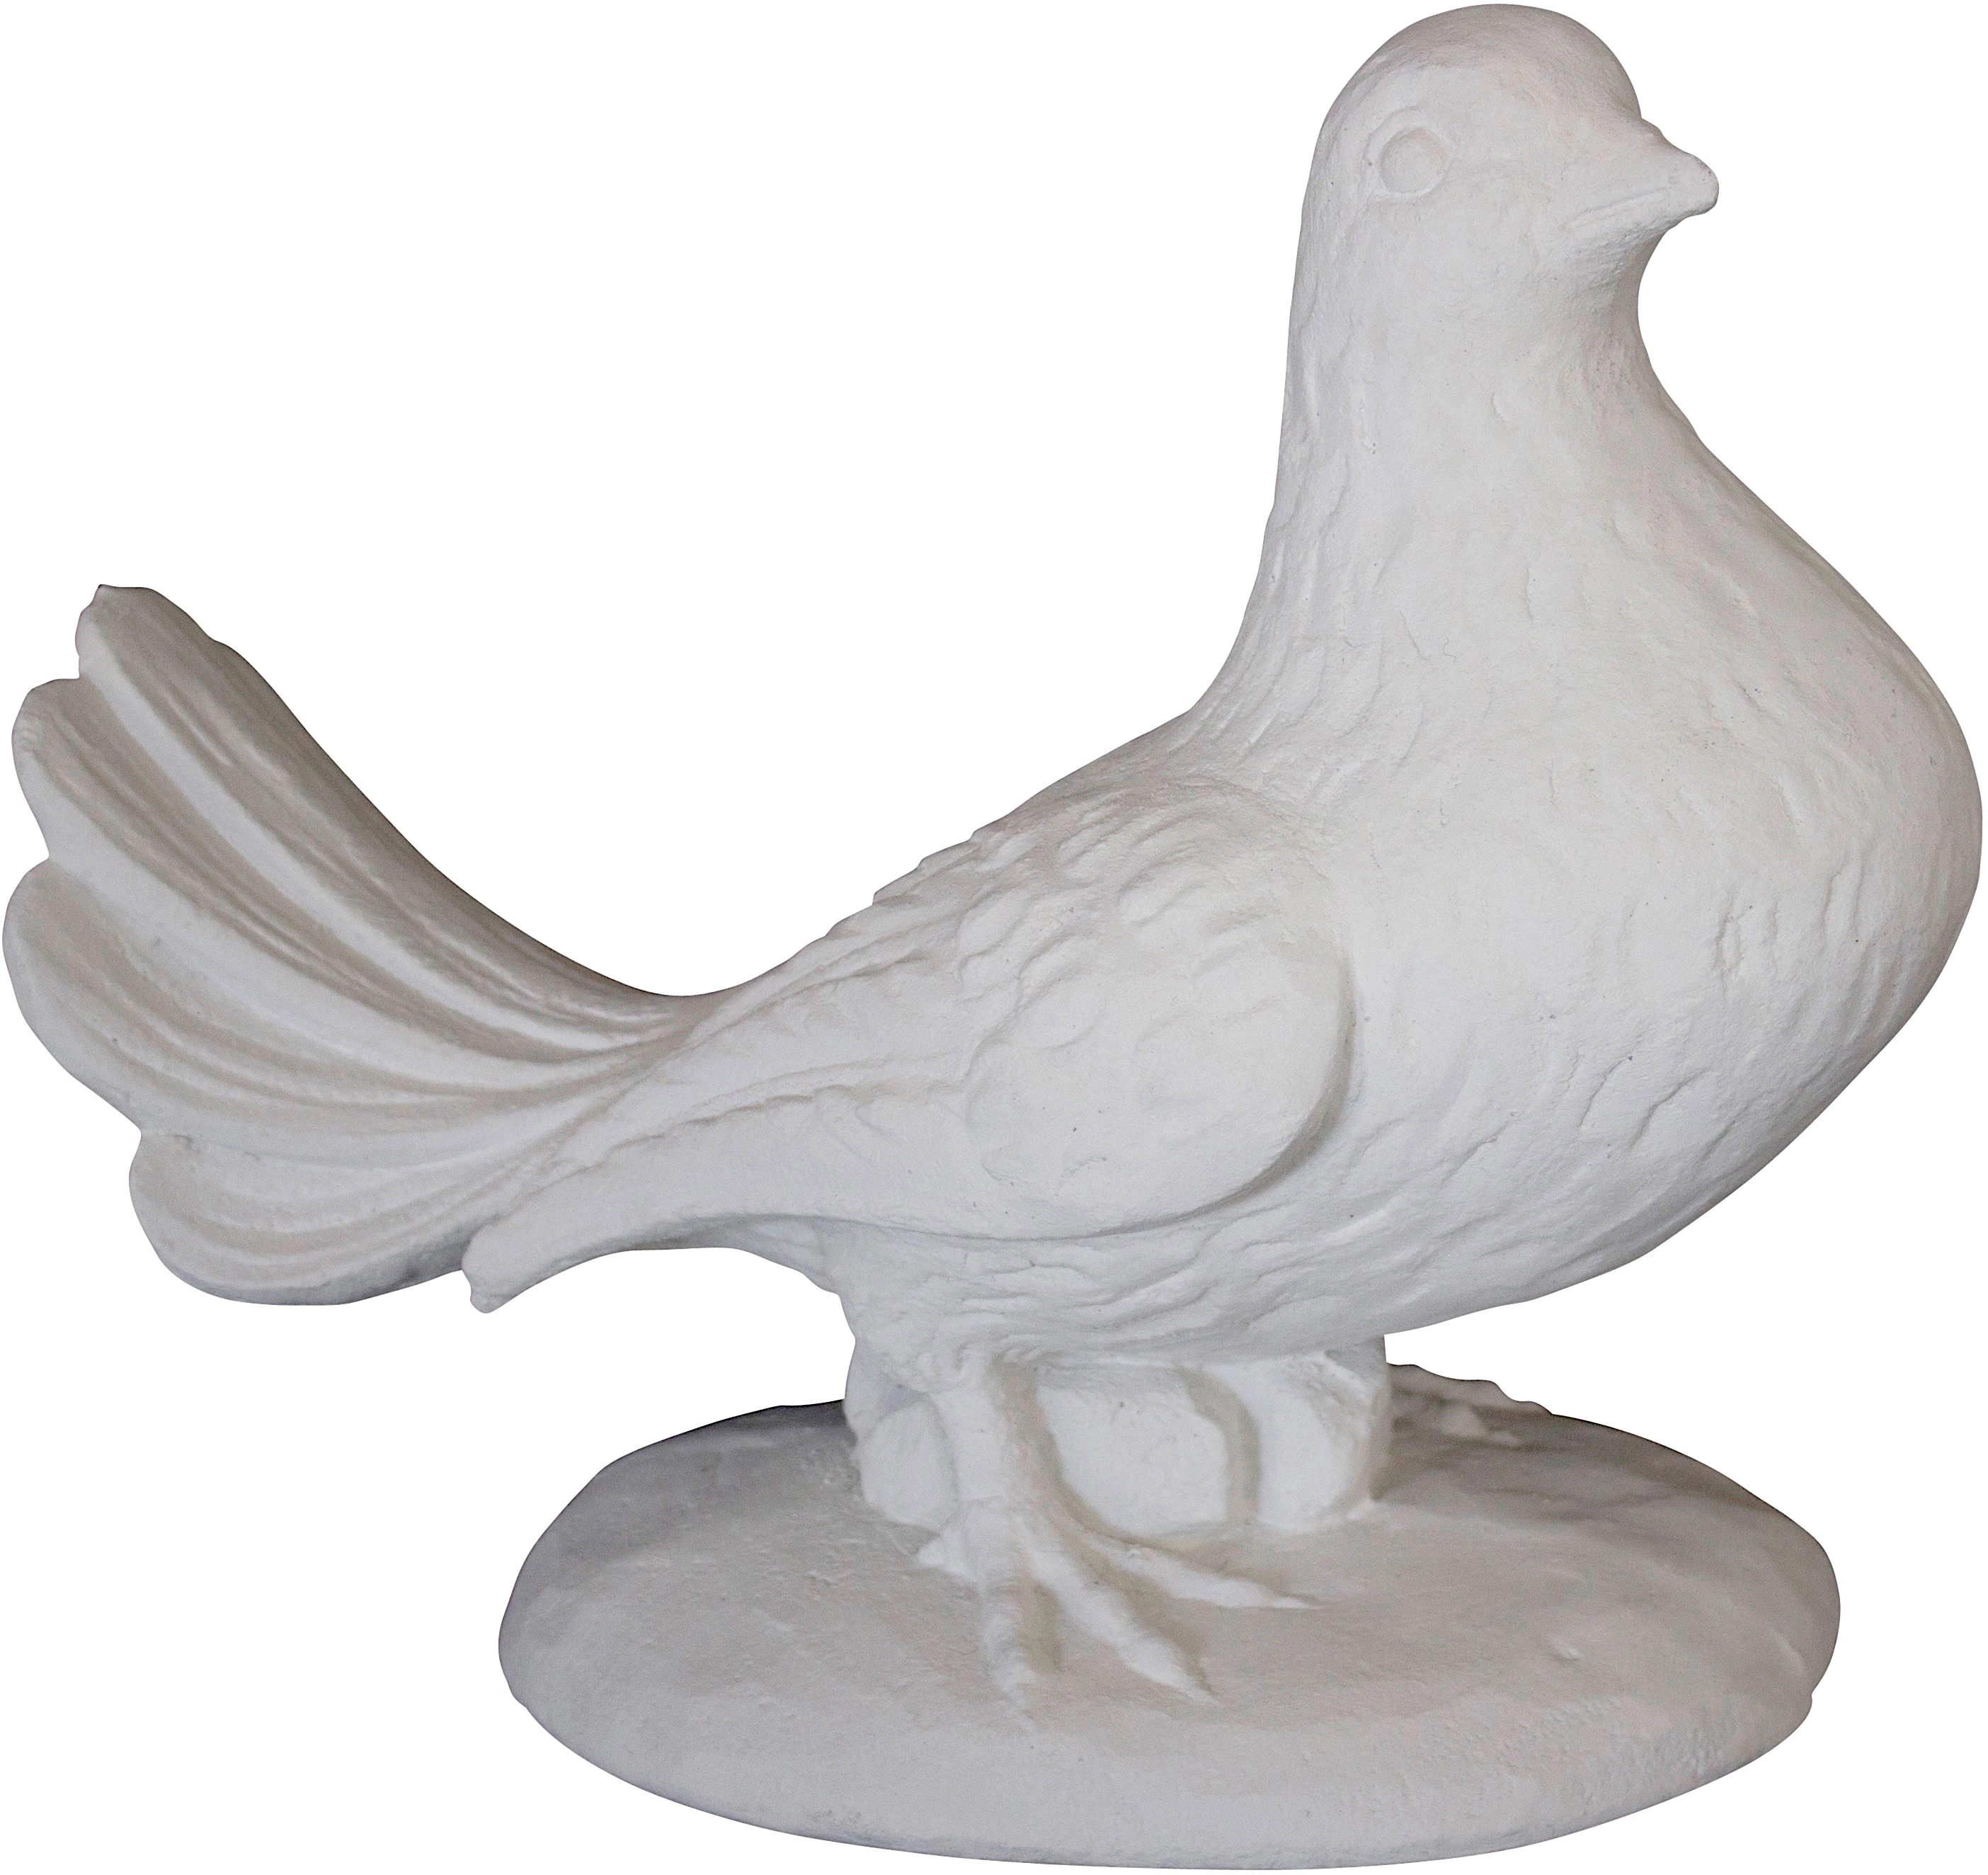 31 Taube OBI bei Fantasieco cm Deko-Figur kaufen Stein Marmor Weiß